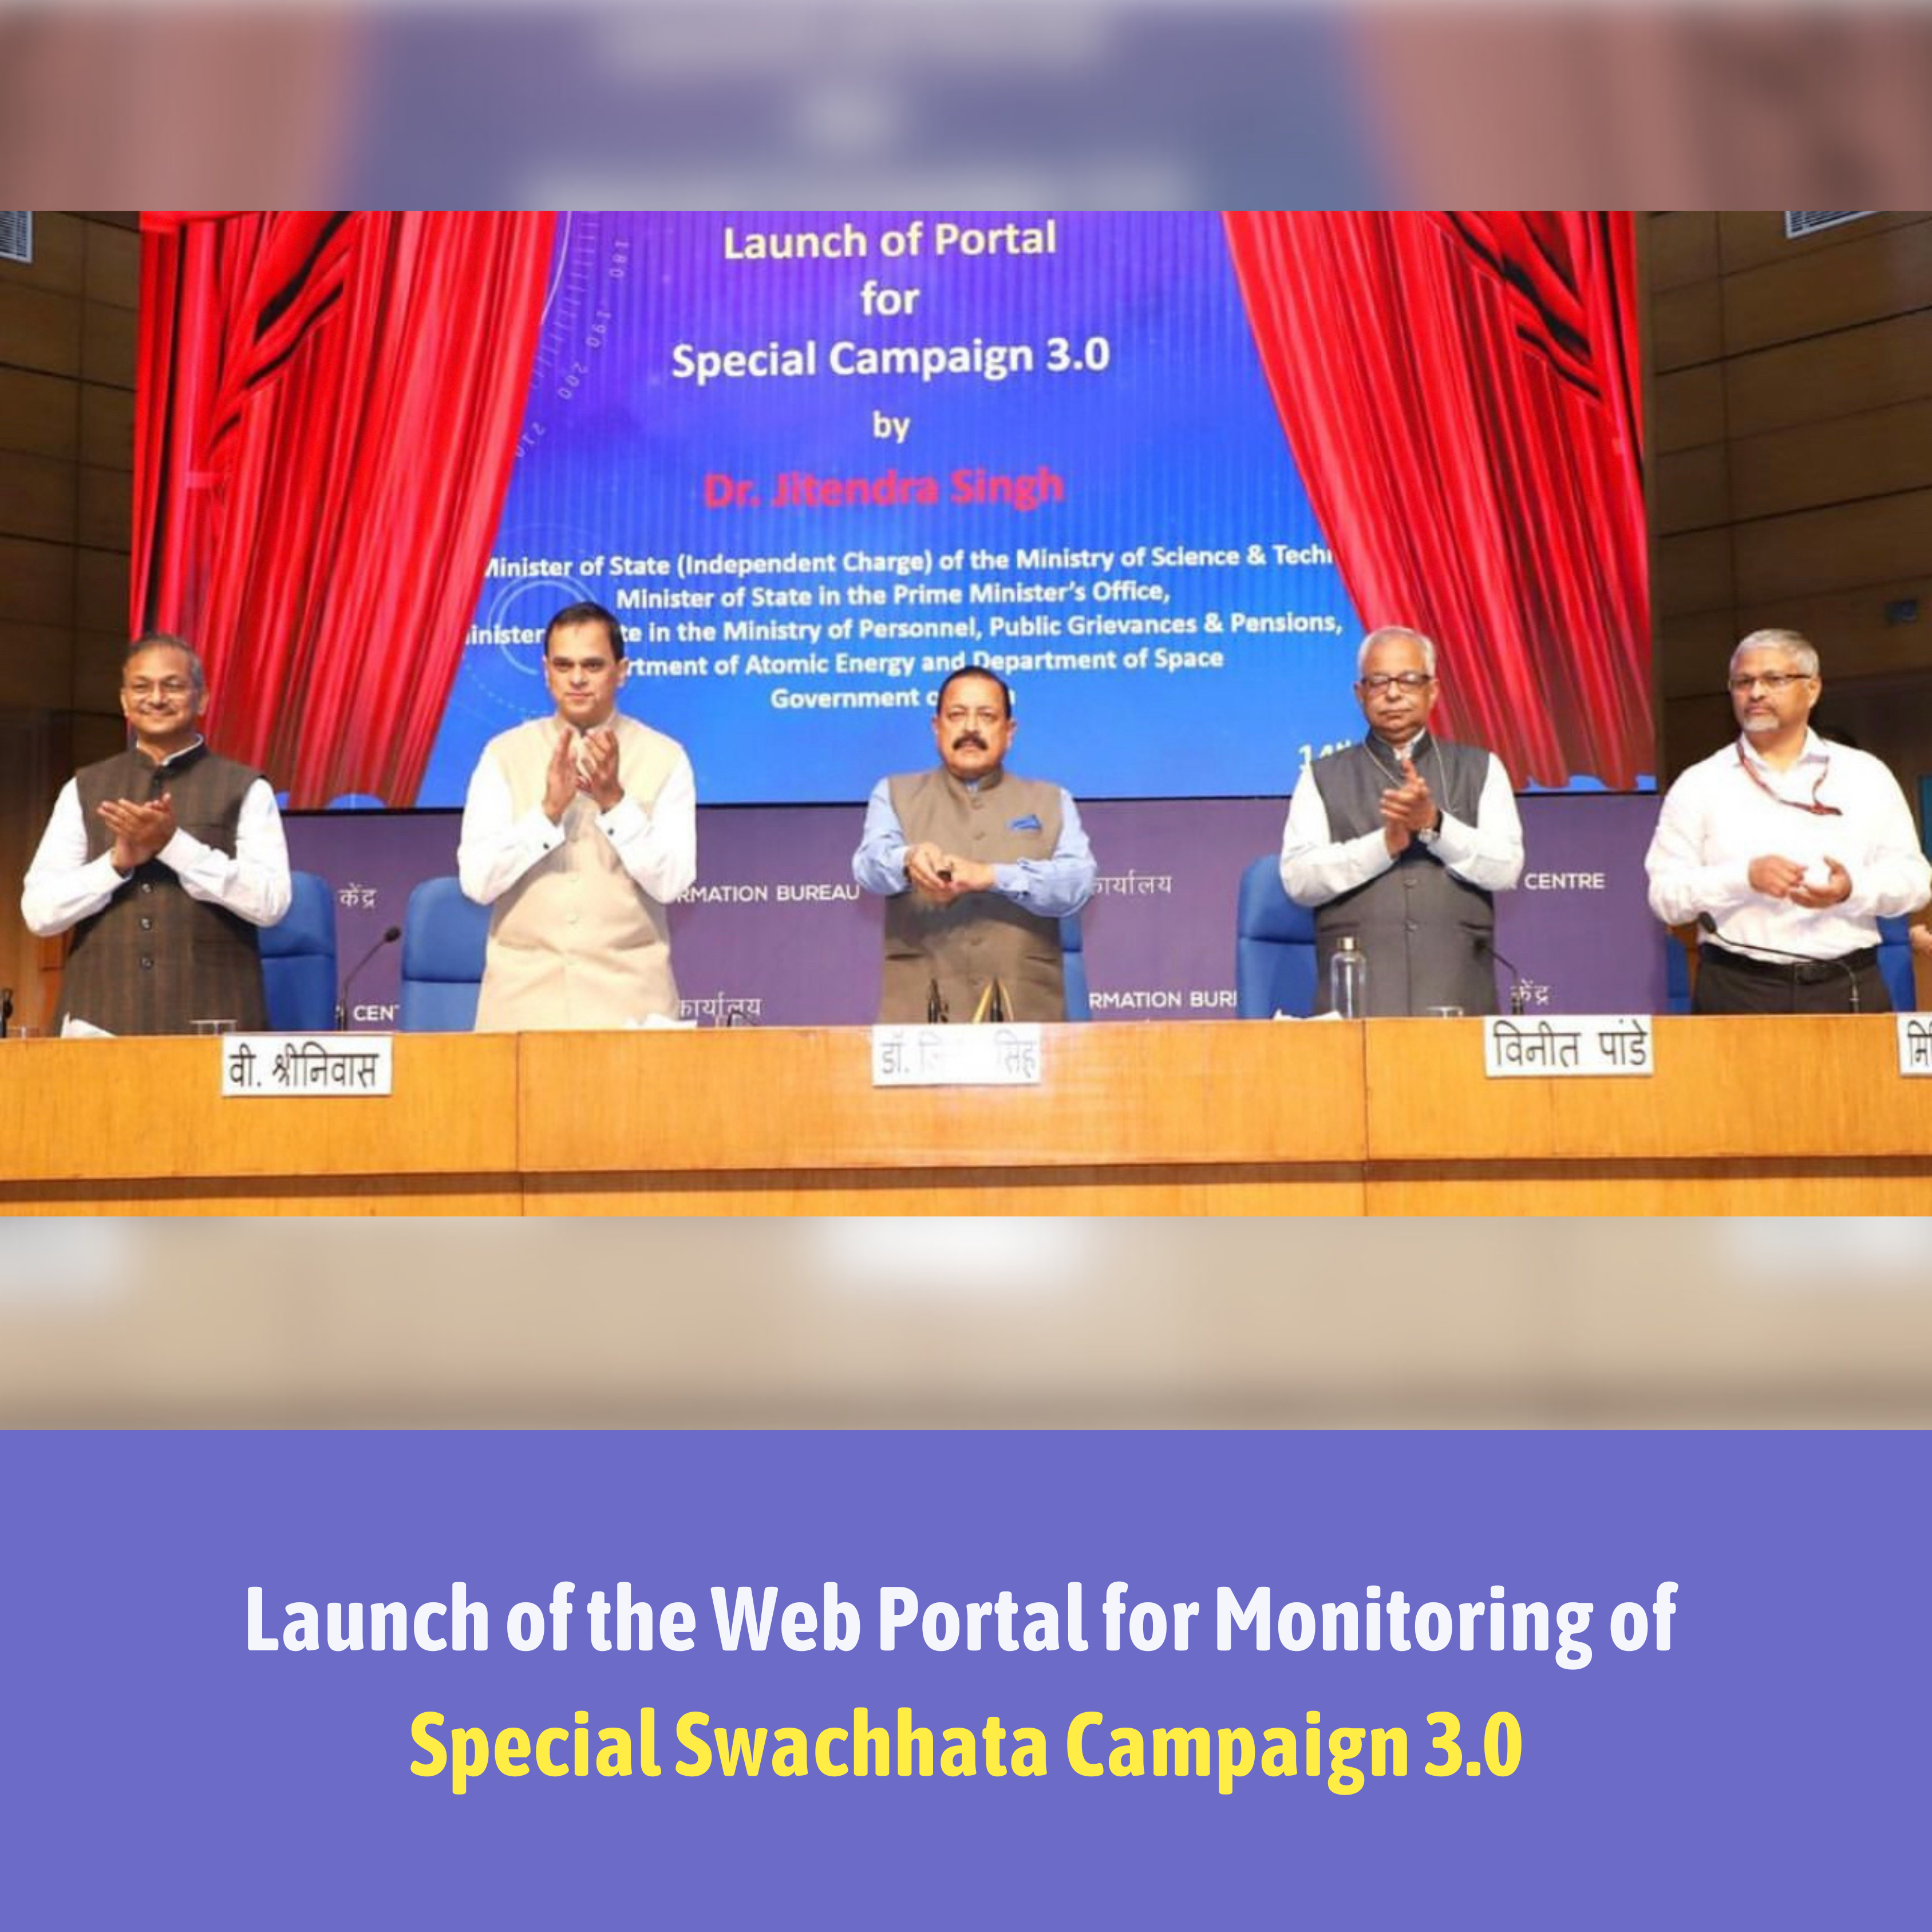 Image of माननीय केंद्रीय मंत्री डॉ. जितेंद्र सिंह ने विशेष स्वच्छता अभियान 3.0 की निगरानी के लिए वेब पोर्टल लॉन्च किया।